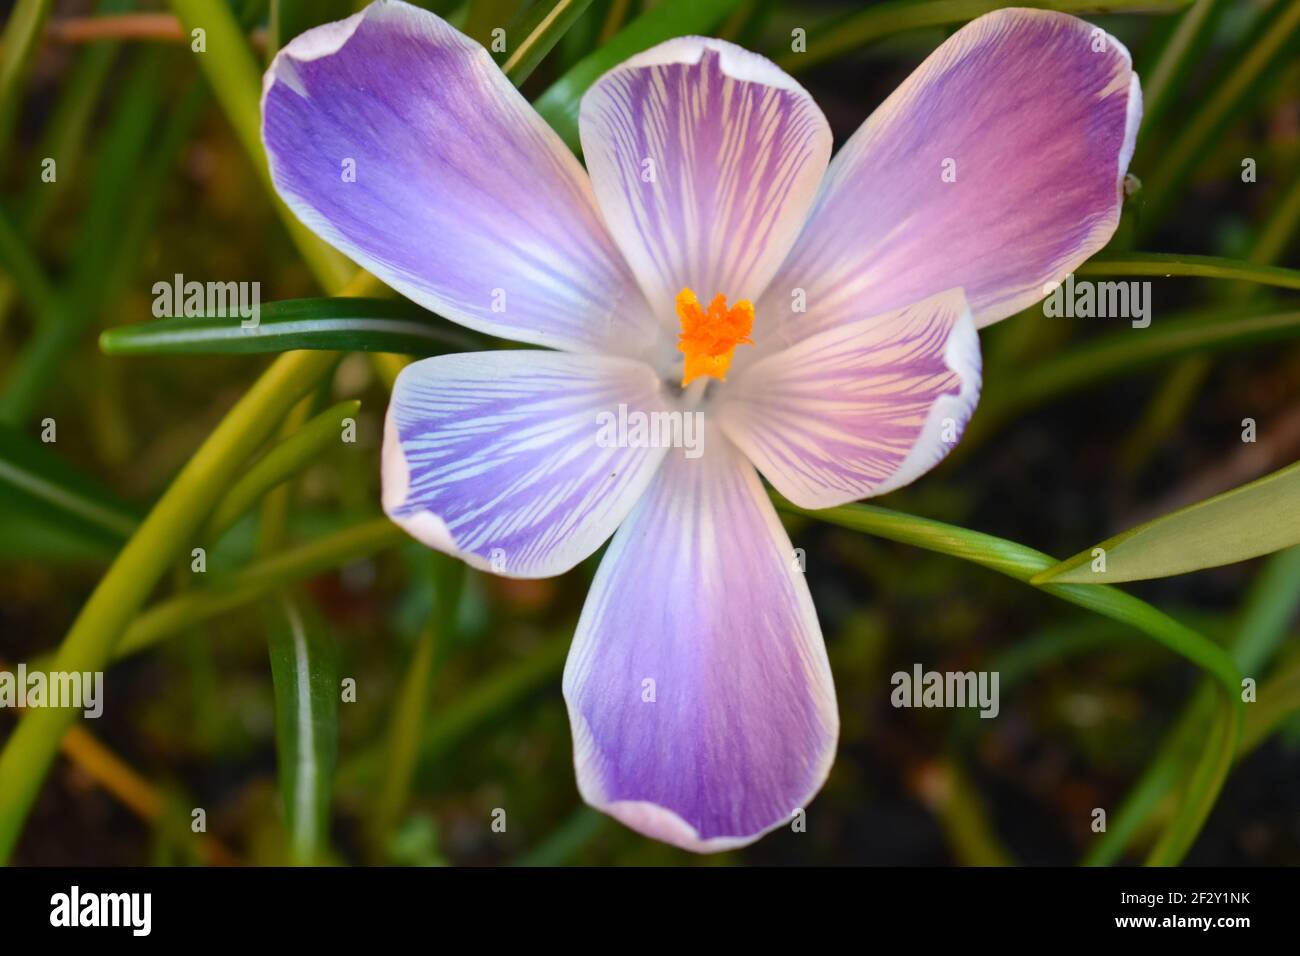 Le crocus hollandais est une ampoule à fleur de printemps avec un grand blanc jaune Violet à rayures et fleurs de bronze il pousse grand planté dans des jardins de rochers ou des lits de fleurs Banque D'Images